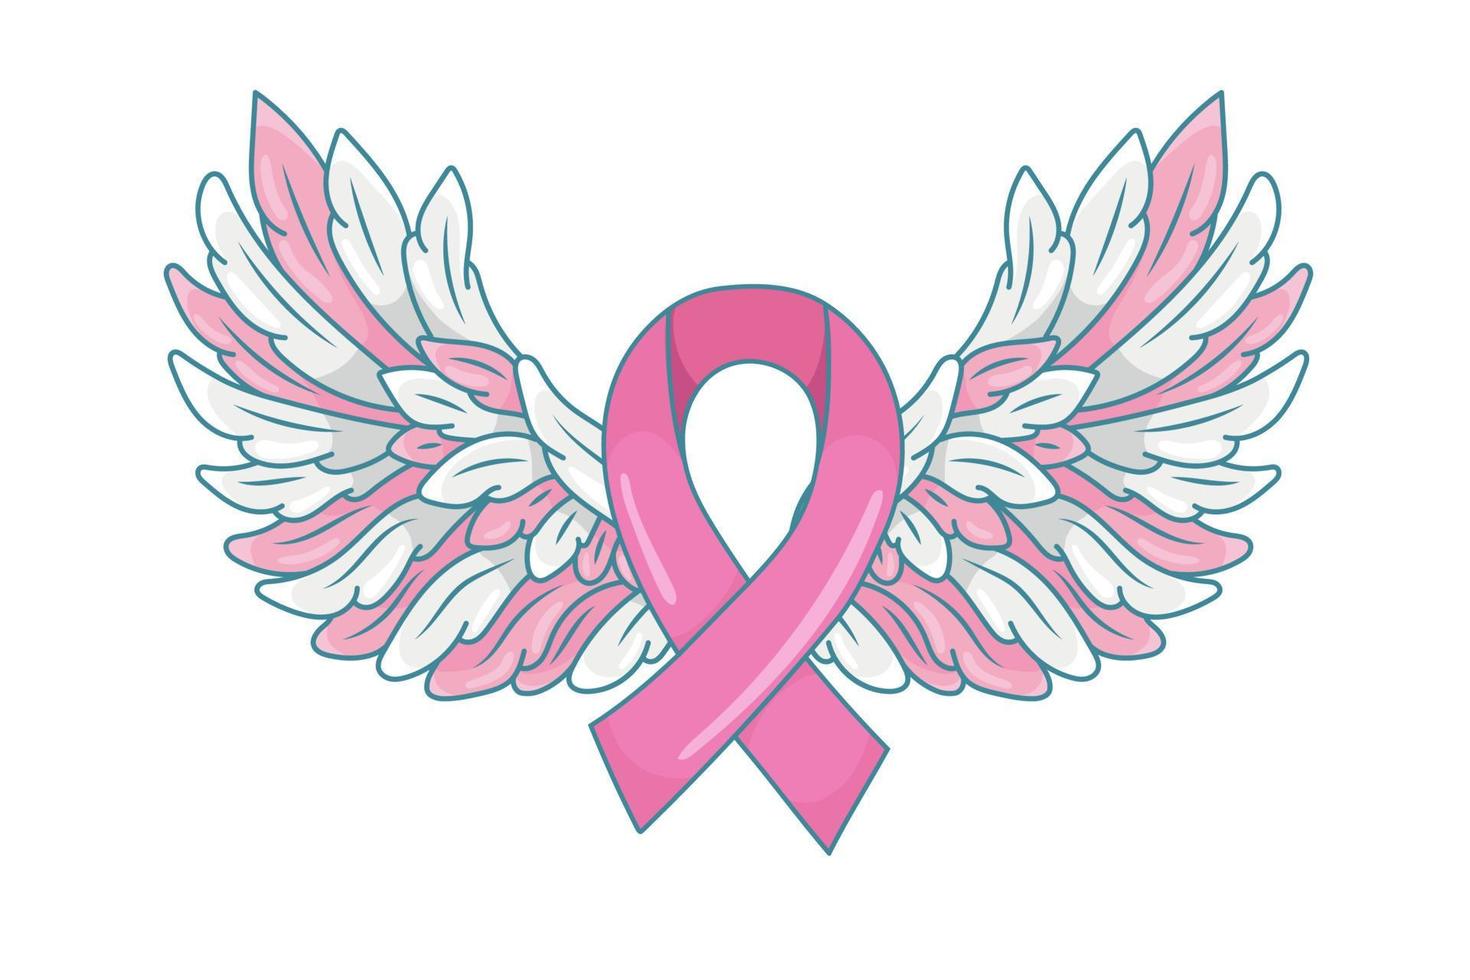 cinta rosa con alas de ángel extendidas como símbolo de esperanza y apoyo. ilustración del mes de concientización sobre el cáncer de mama. vector aislado en blanco